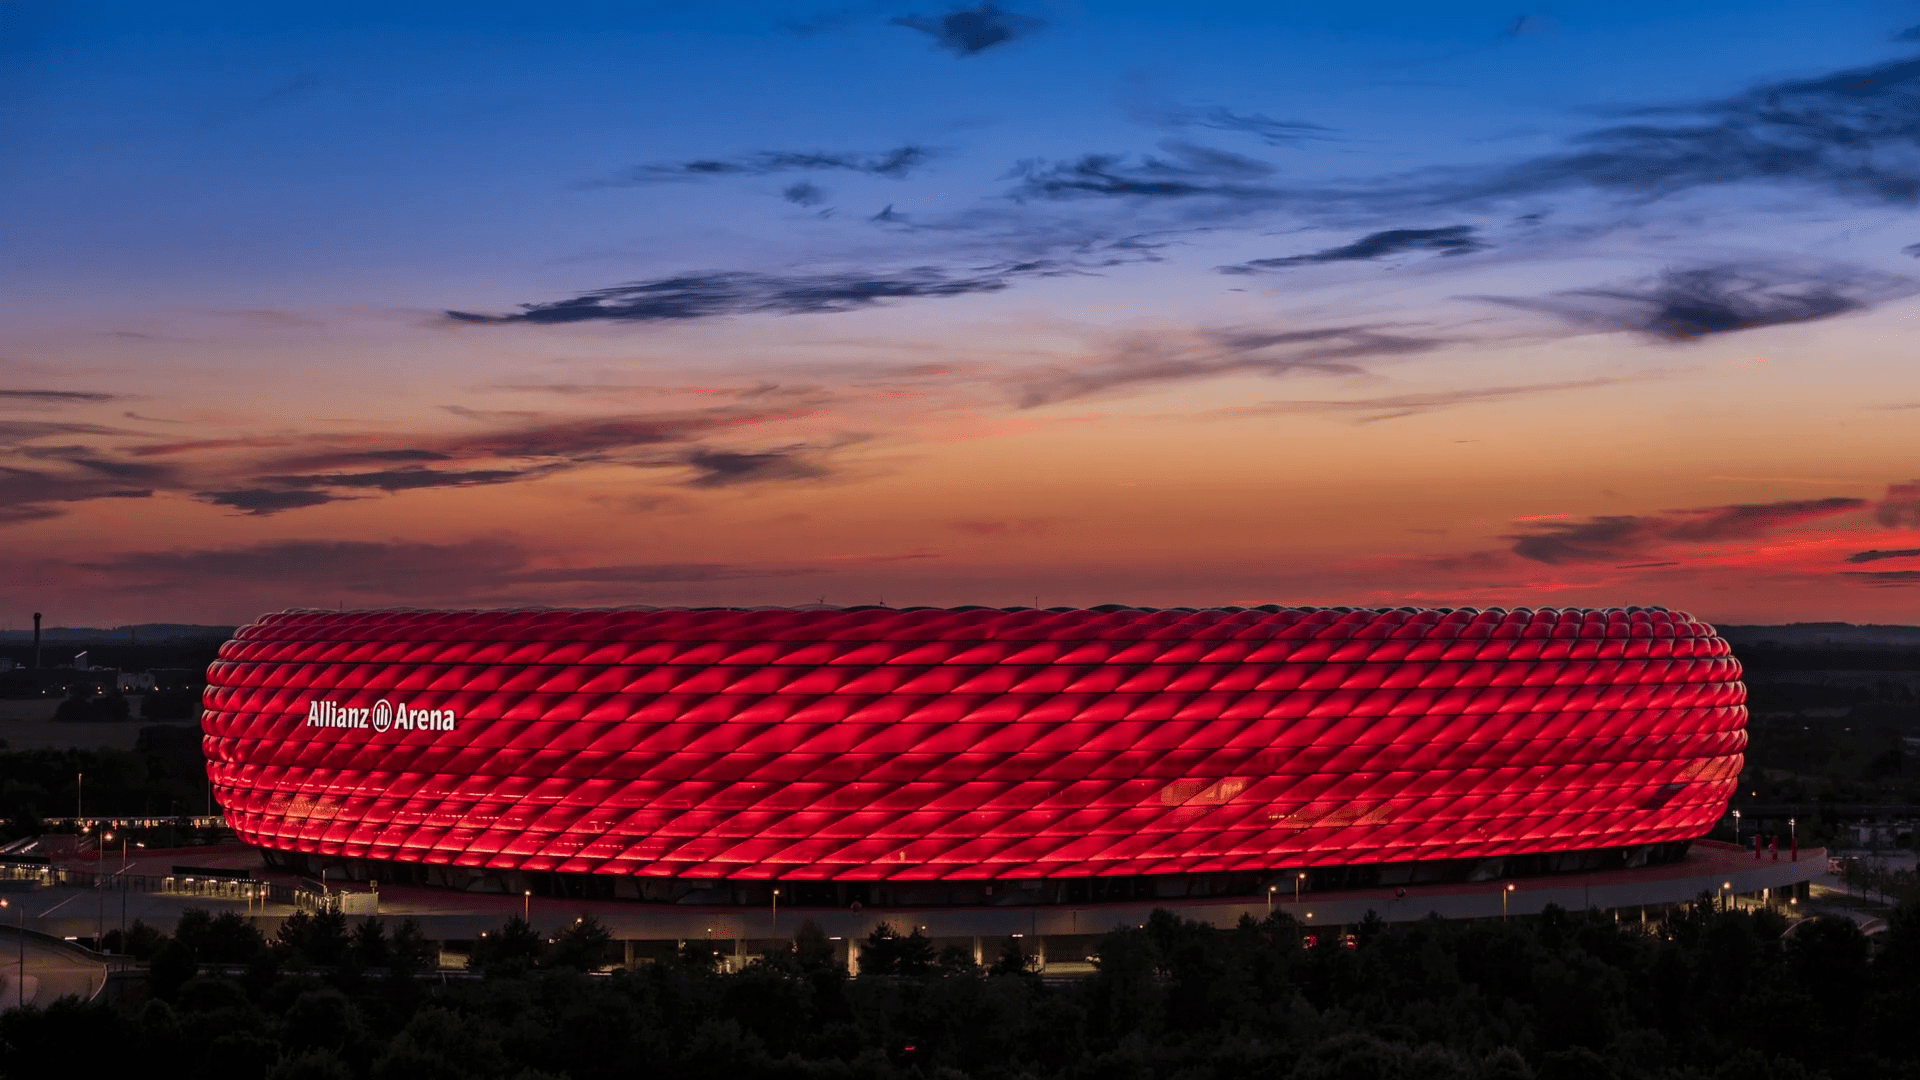 Allianz Arena Architecture